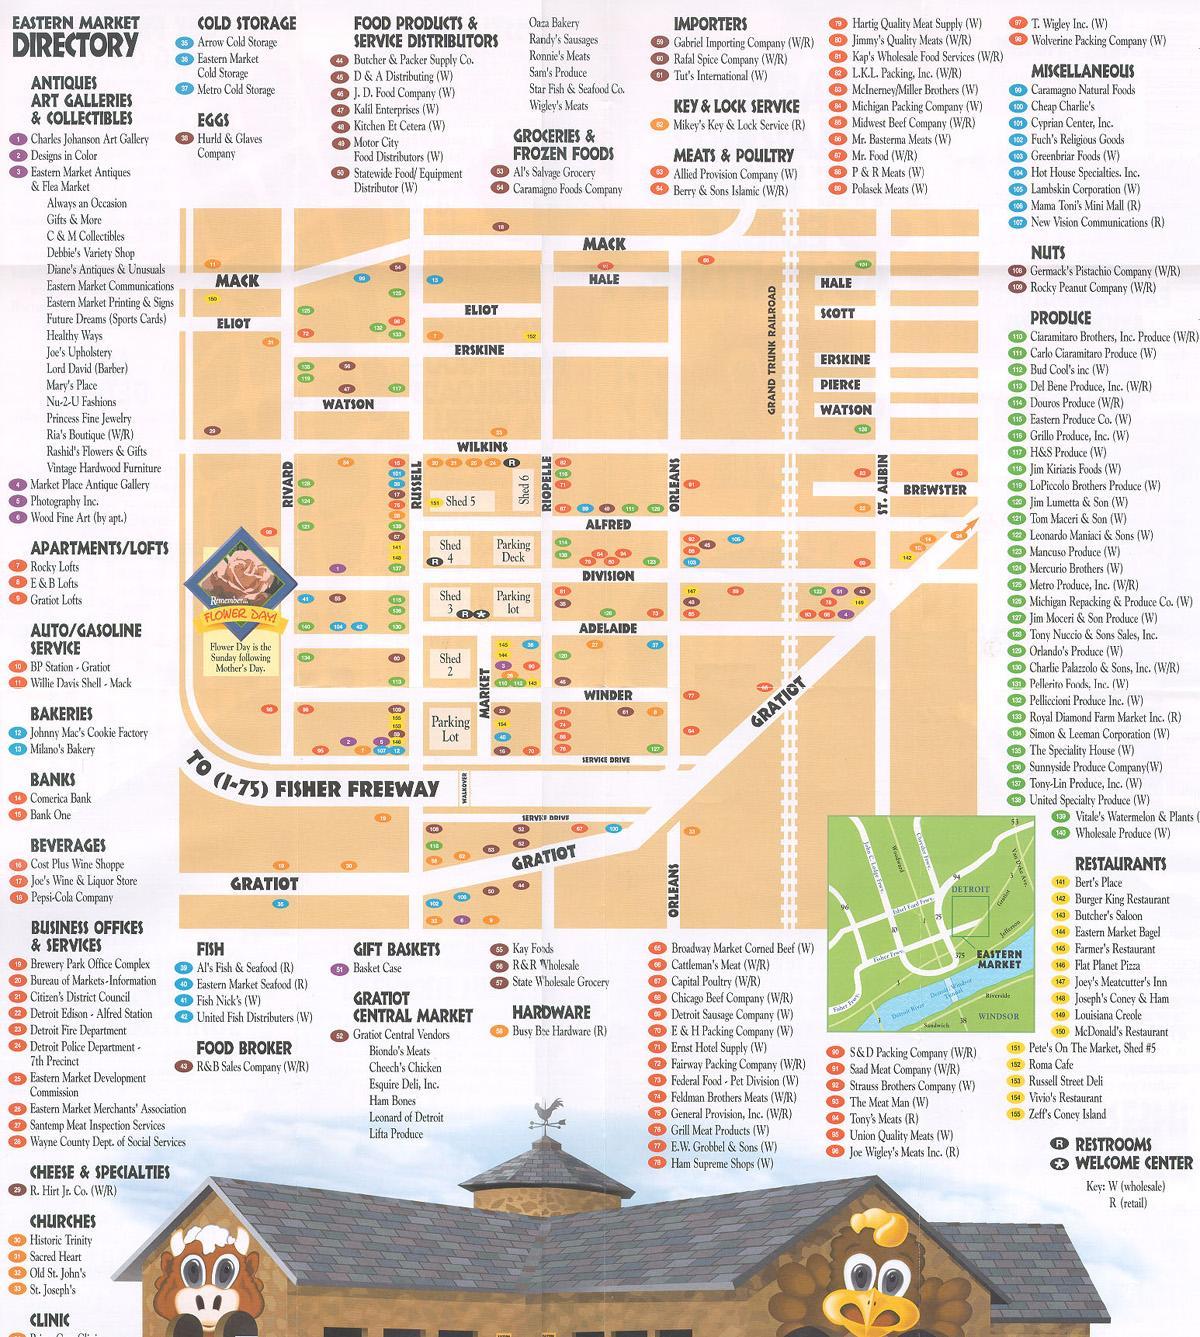 мапа источне тржишта Детроит